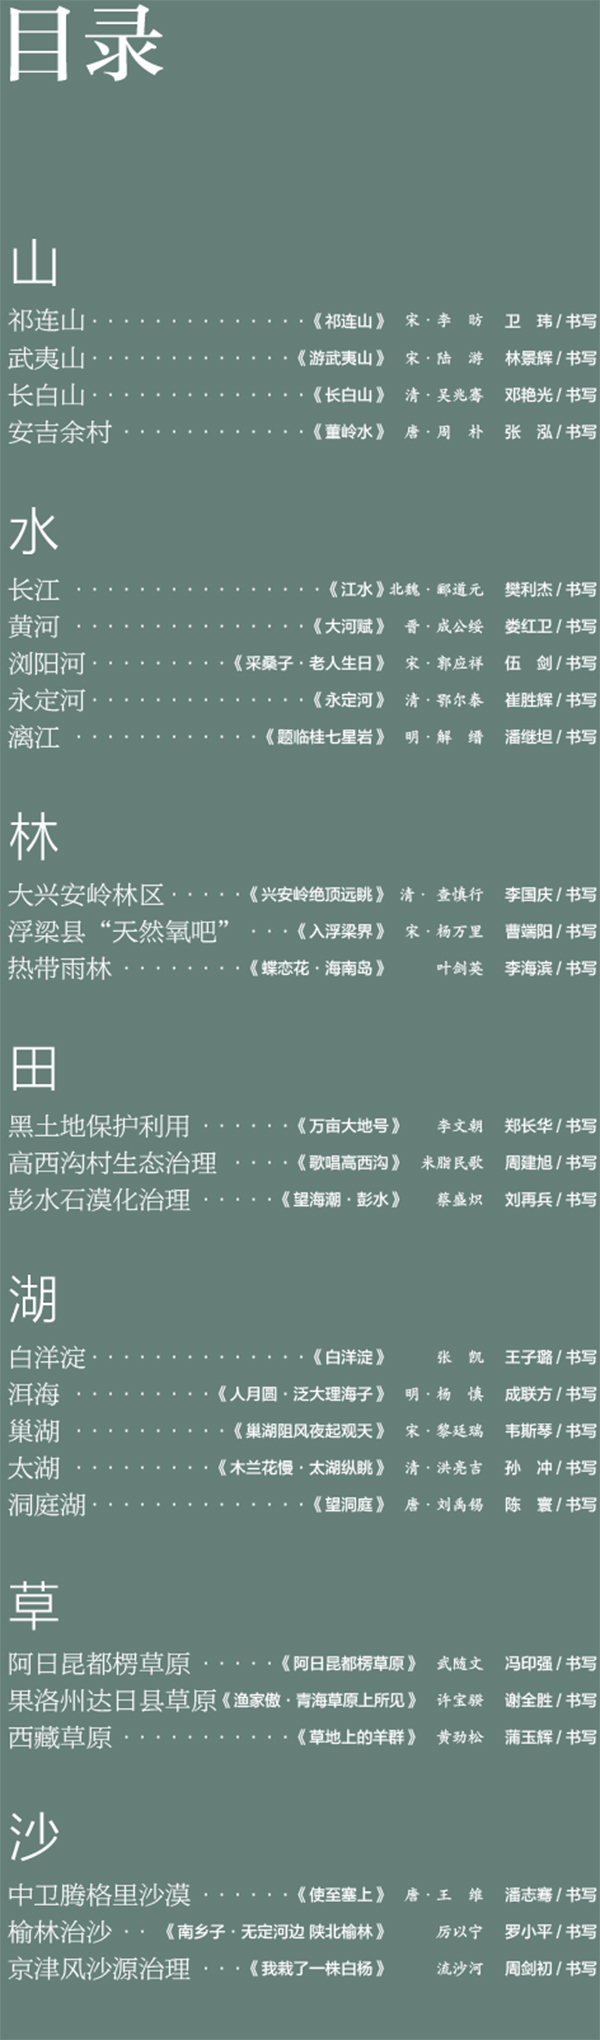 中国书协主题创作书法系列展——美丽中国插图2中国题字网